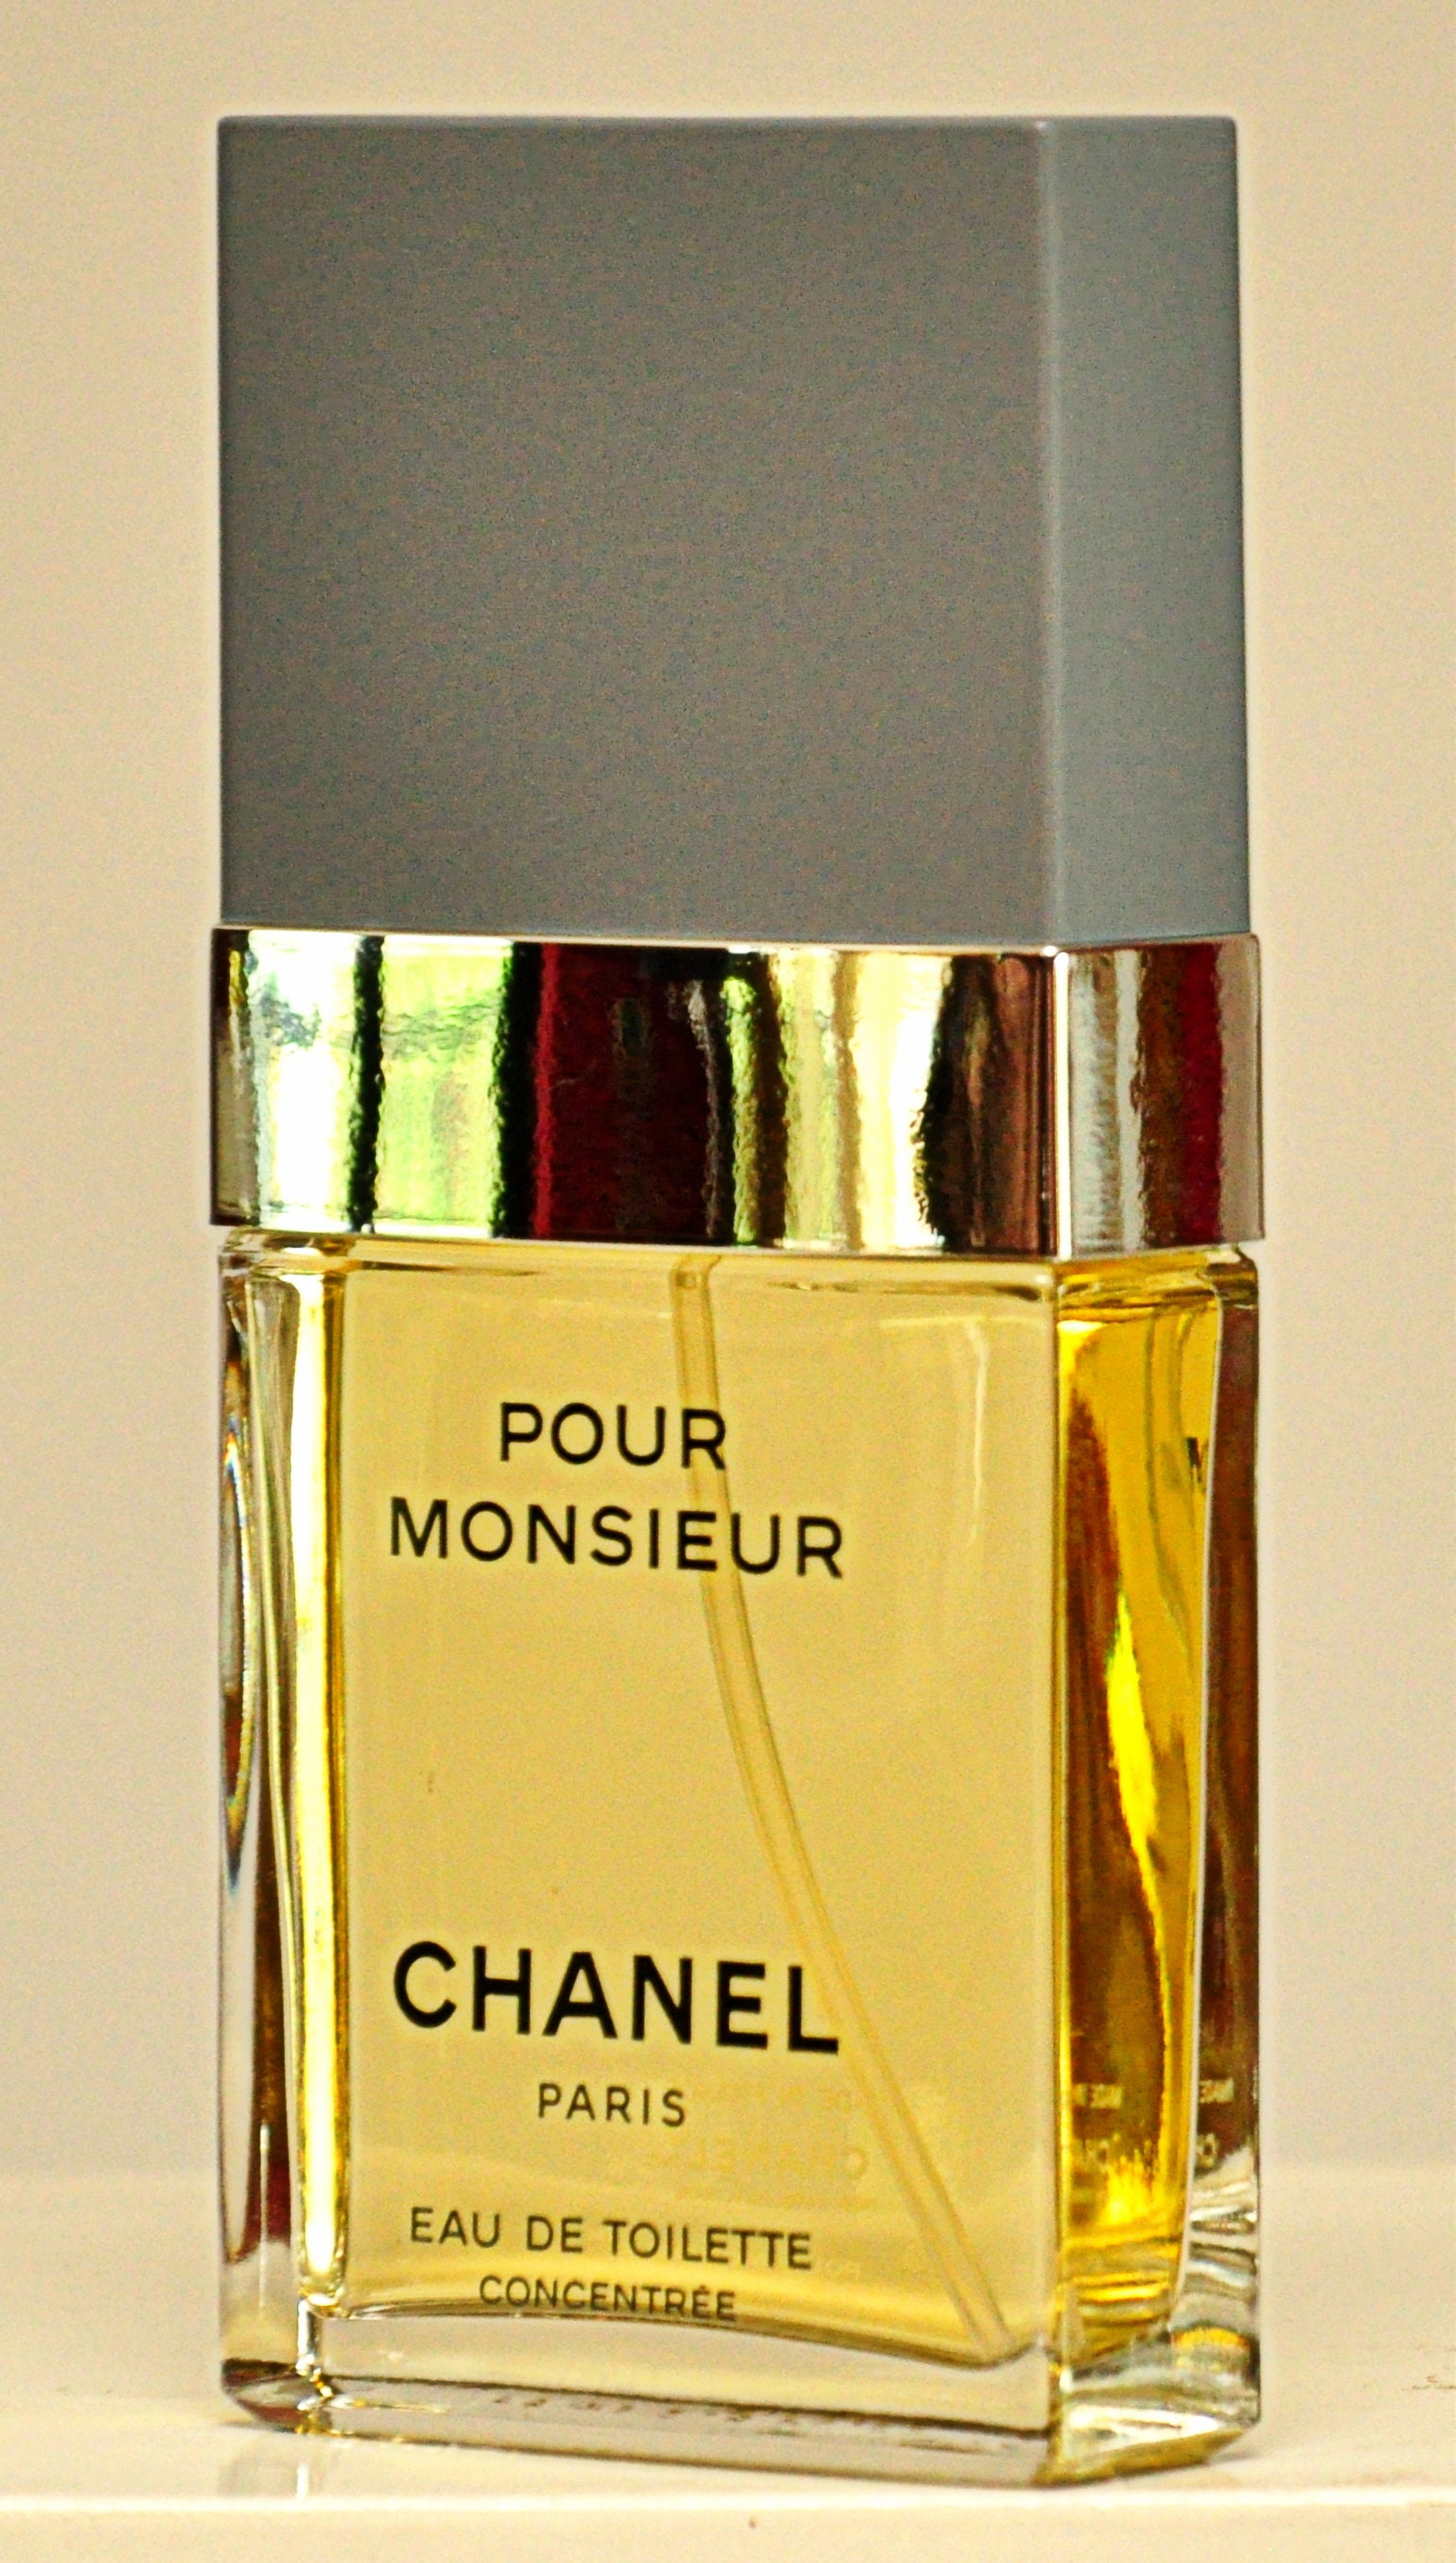 Chanel Pour Monsieur Eau De Toilette Concentree Edt 75ml 2.5 -  Israel